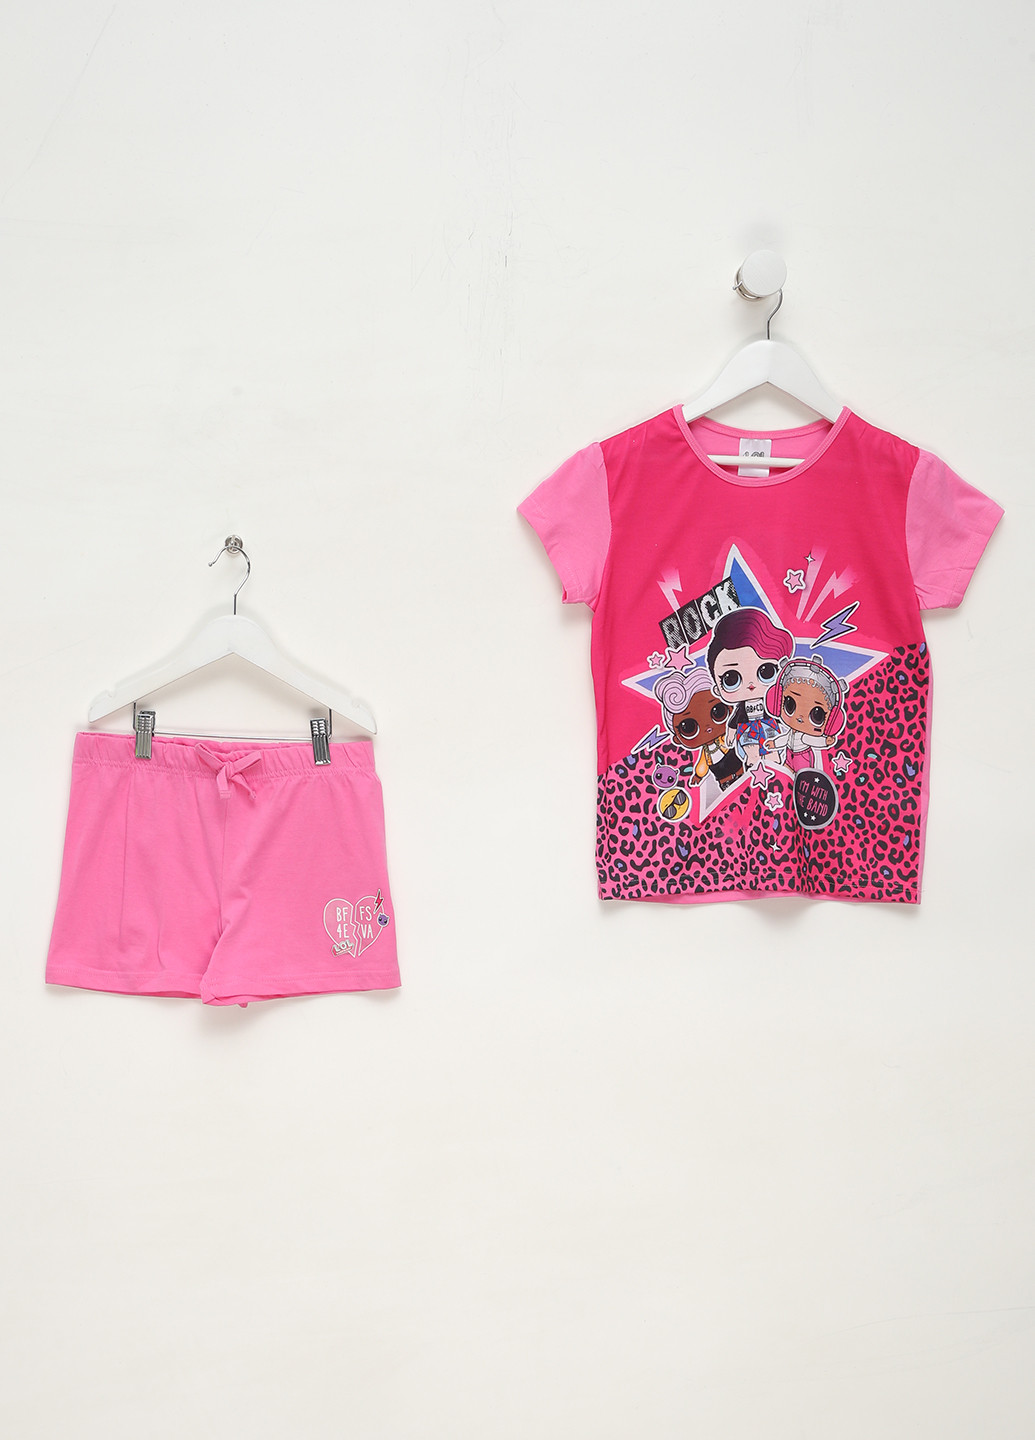 Рожева всесезон піжама (футболка, шорти) футболка + шорти Mint & Berry